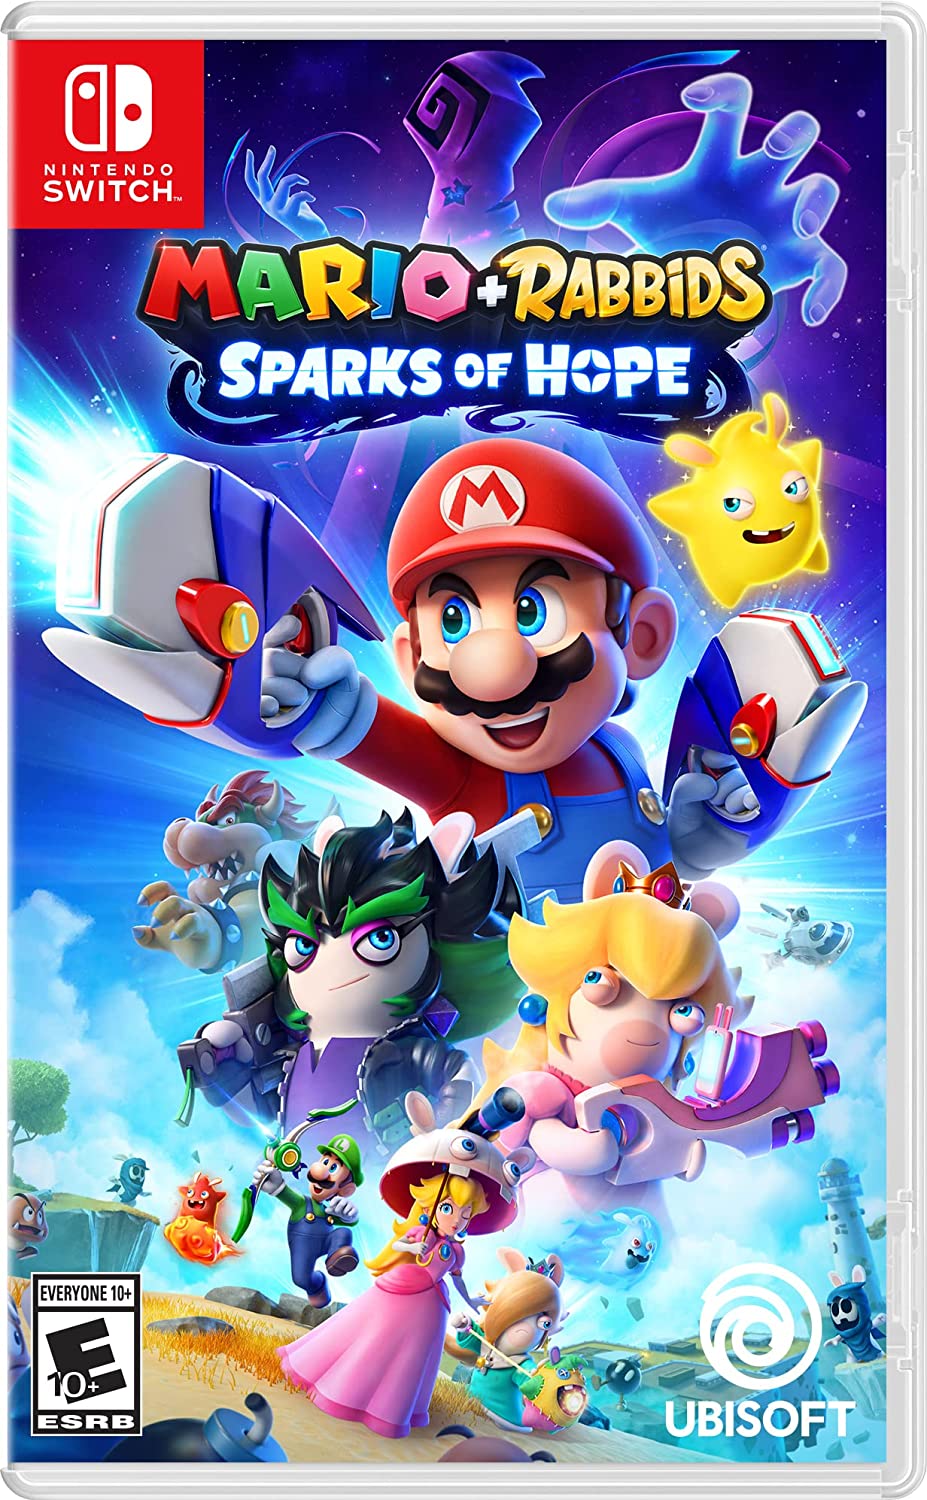 Illustration de couverture de Mario et Lapins Crétins Sparks of Hope pour Nintendo Switch.